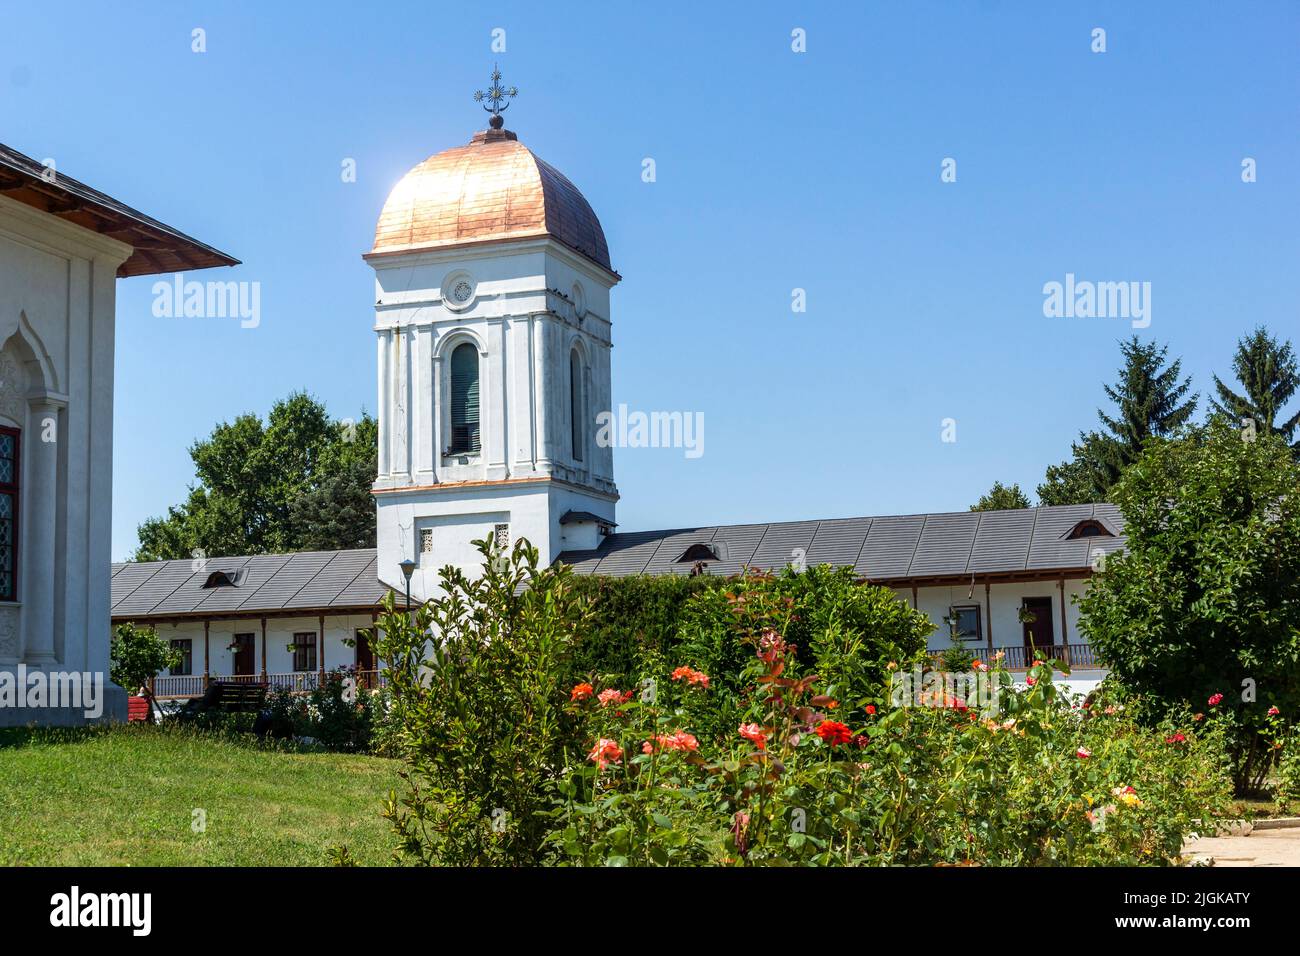 Monastère orthodoxe Cernica près de la ville de Bucarest, Roumanie Banque D'Images